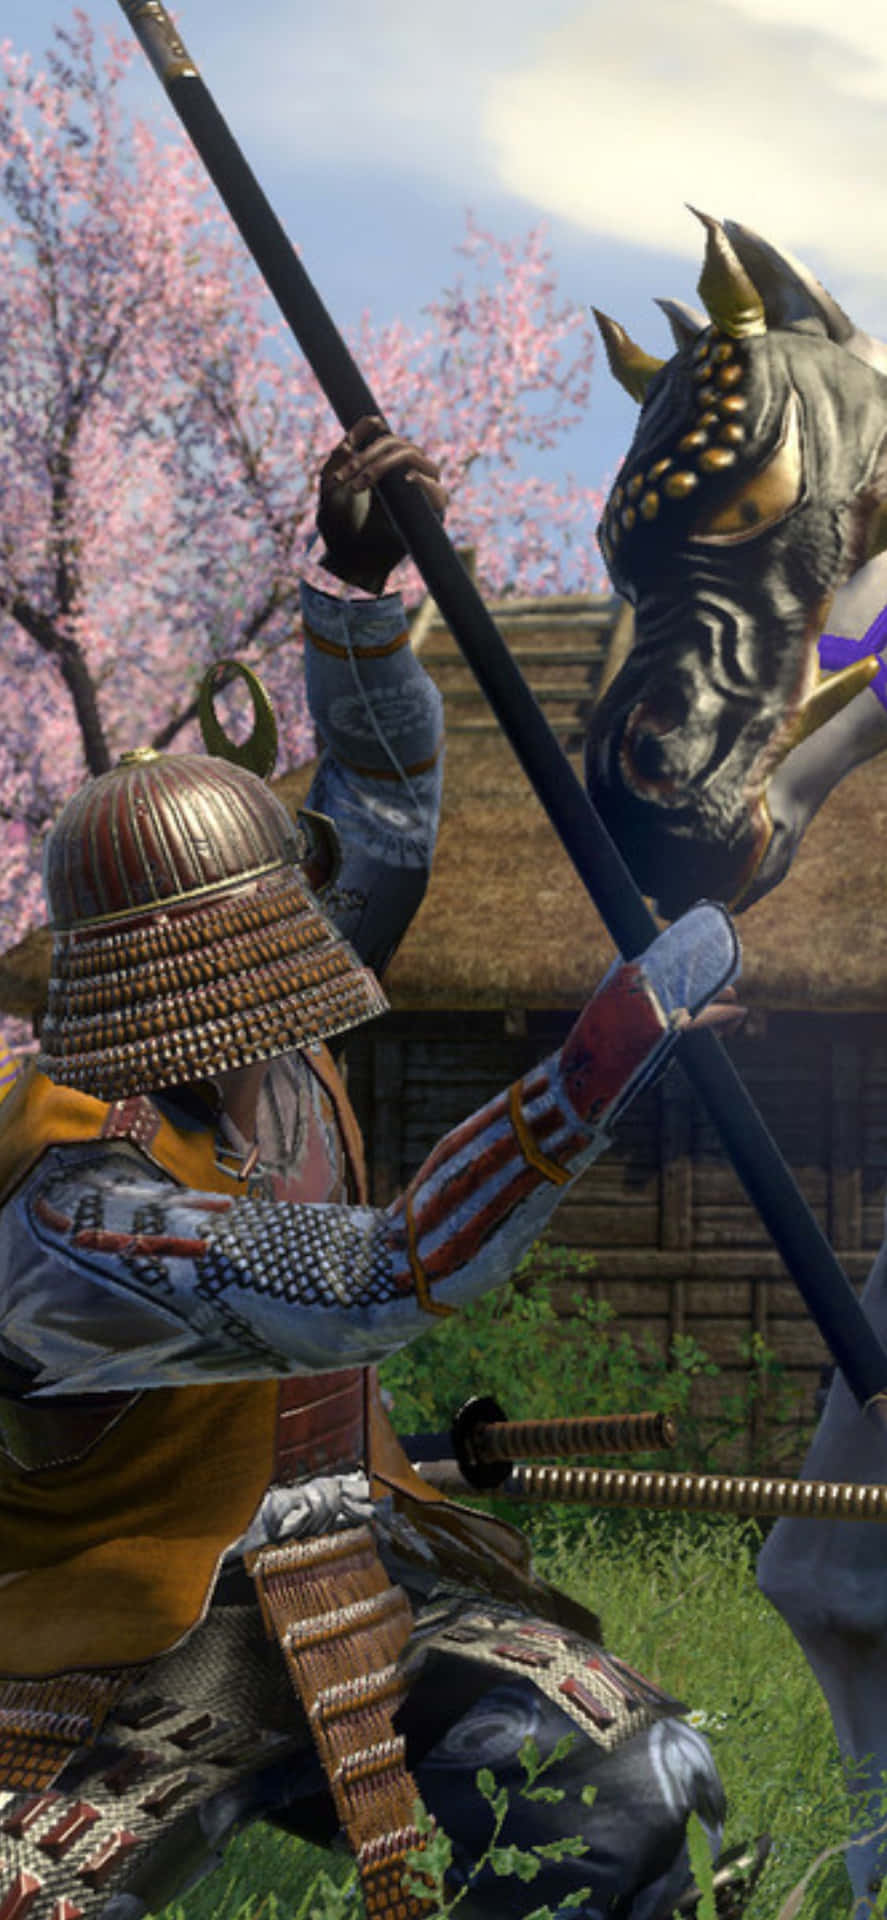 Iphonex Bakgrundsbild För Total War: Shogun 2